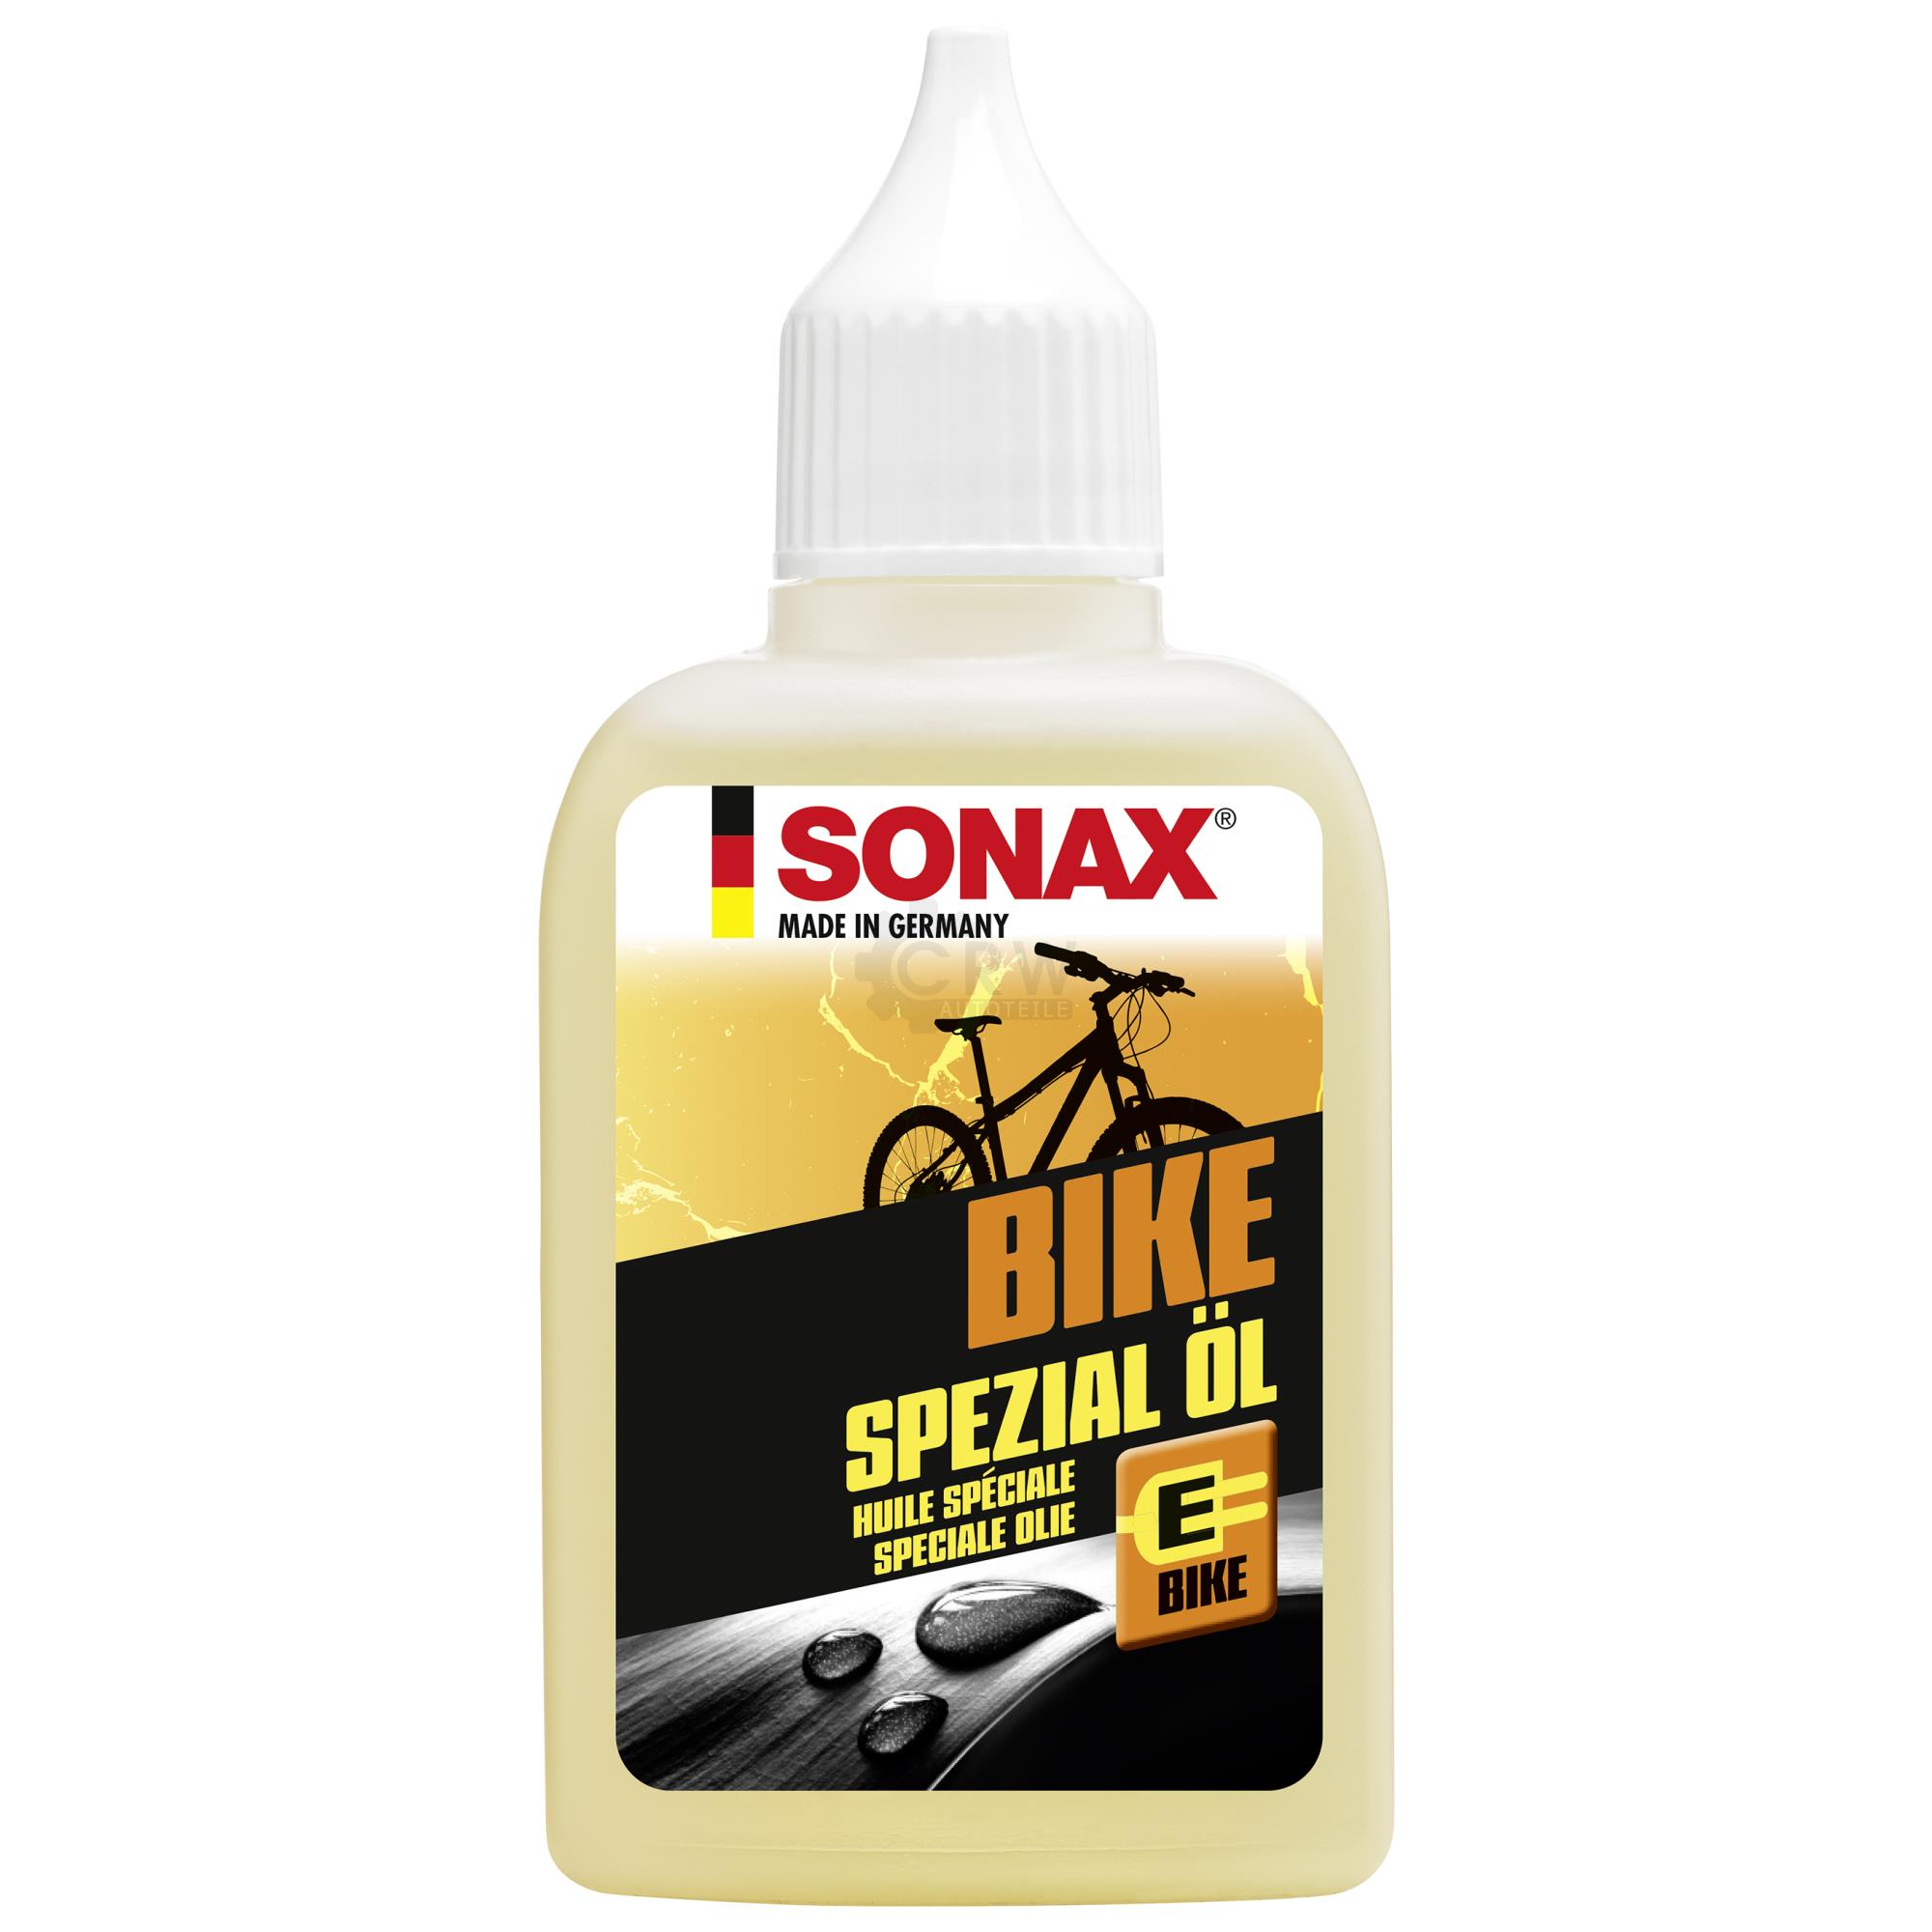 SONAX 08575410  BIKE Spezial Öl 50 ml